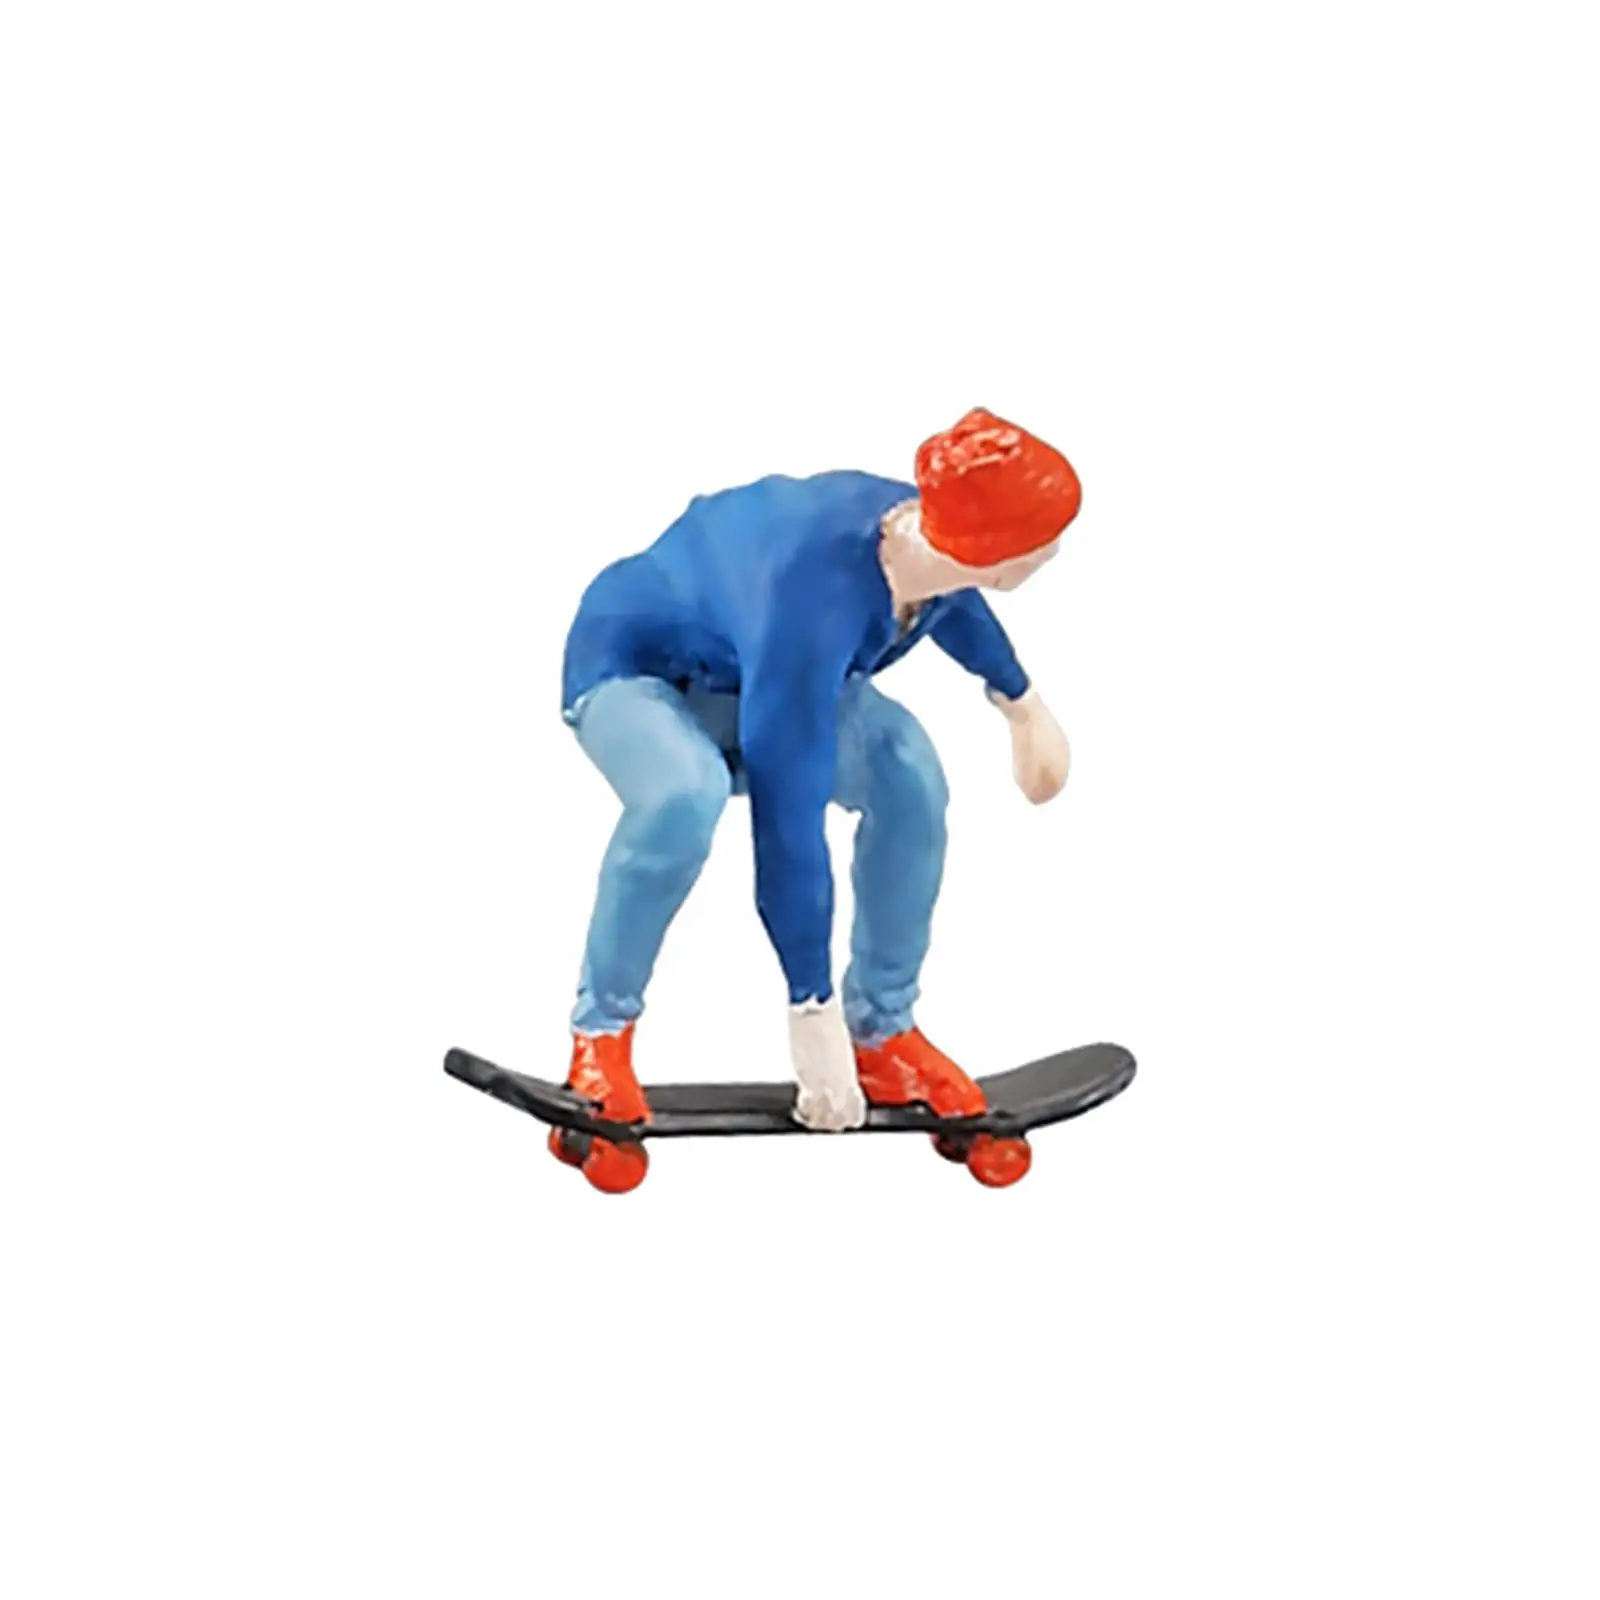 1/64 Scale Miniature Figure Skateboard Man Doll Toy for Dollhouse Accessories Desktop Ornament DIY Projects Fariy Garden S Gauge